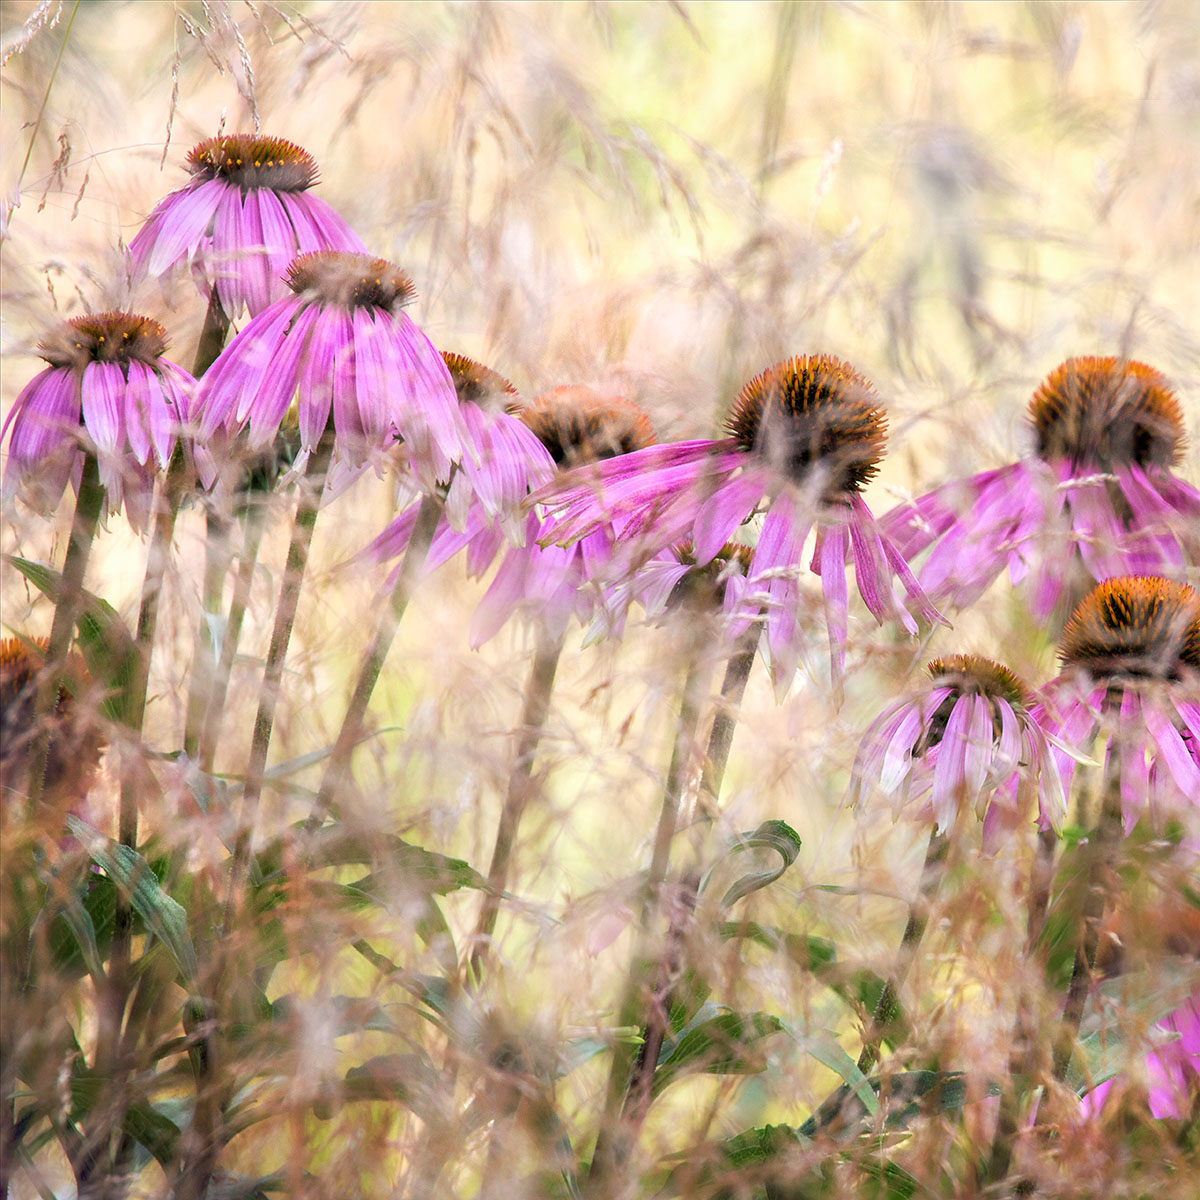 'Echinacea' Nigel Burkitt. Concurso Internacional de Fotografía de Jardín IGPTOTY N11